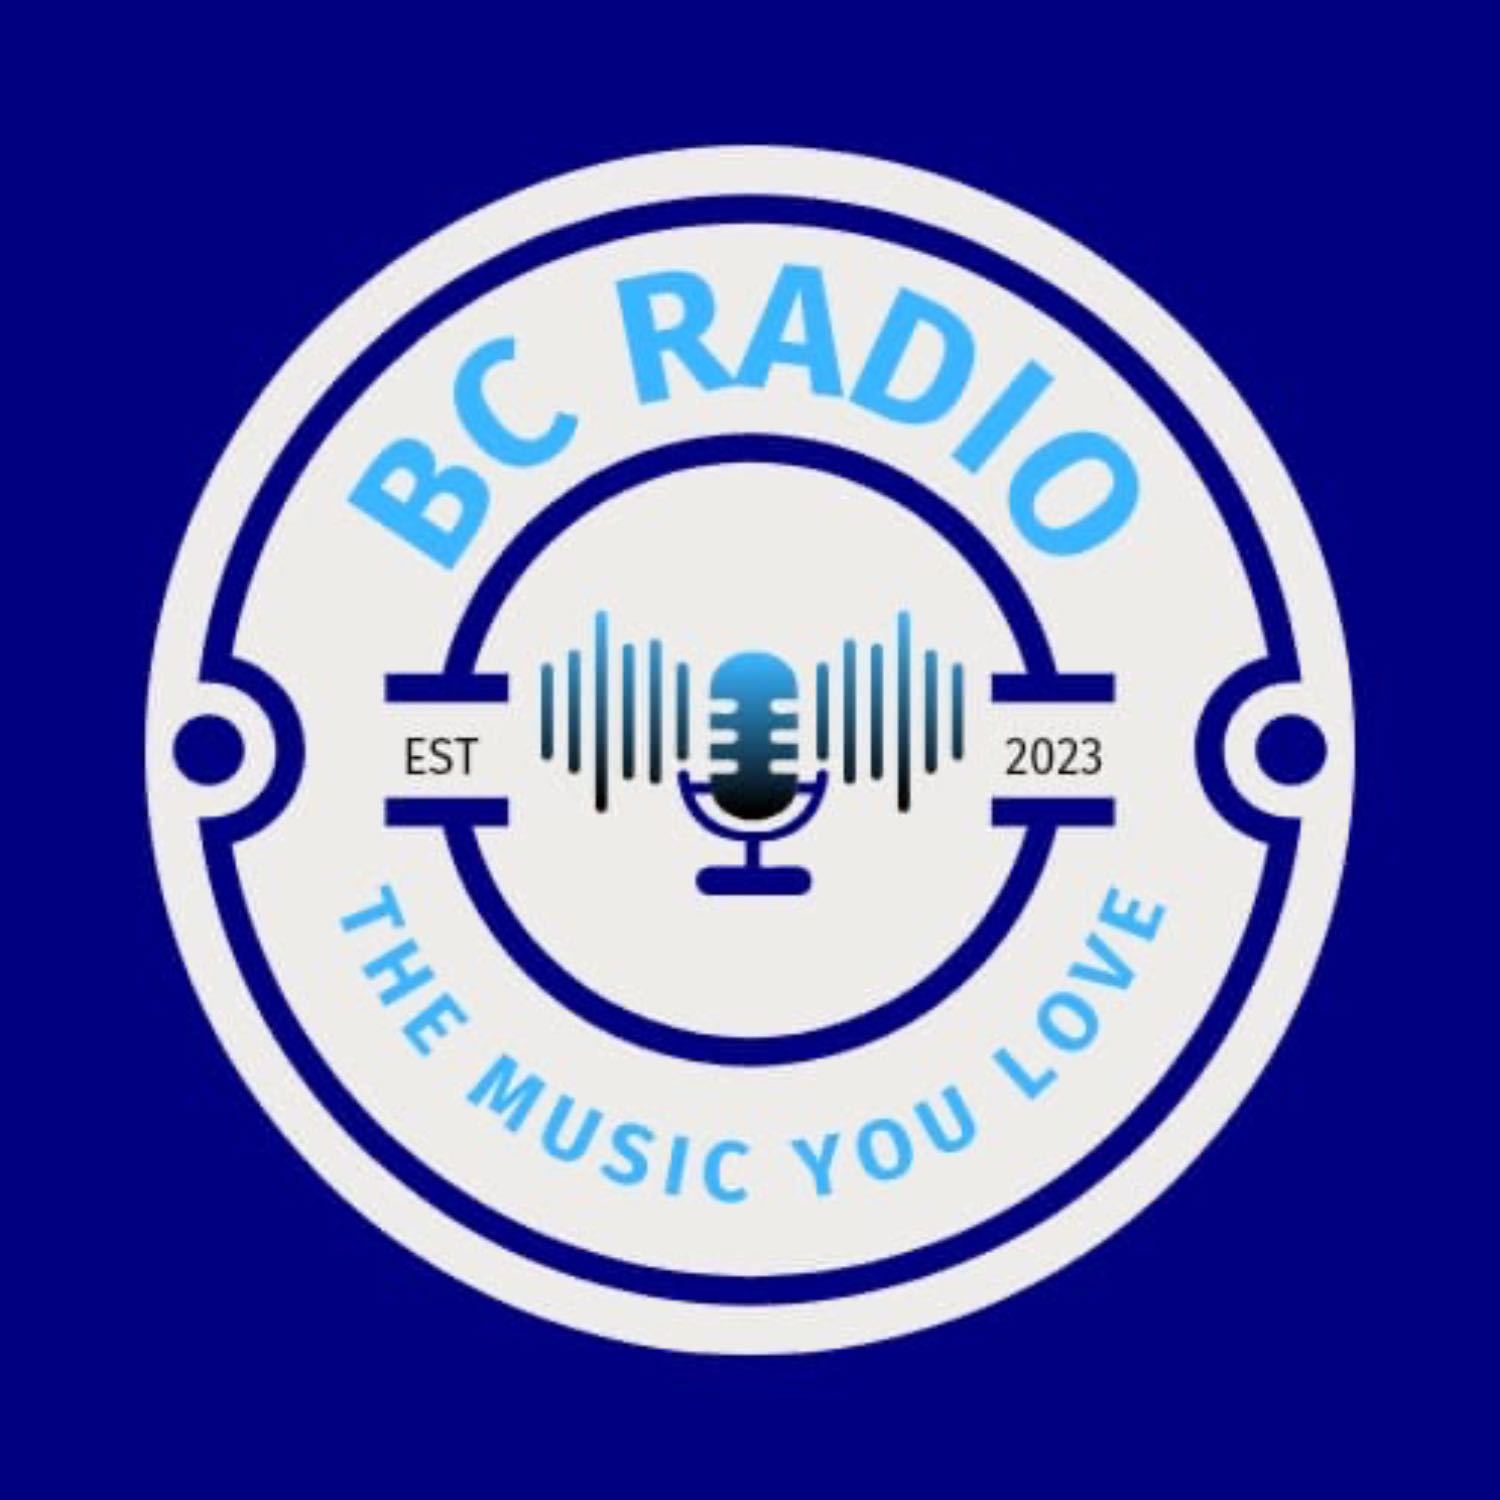 BC Radio Replay